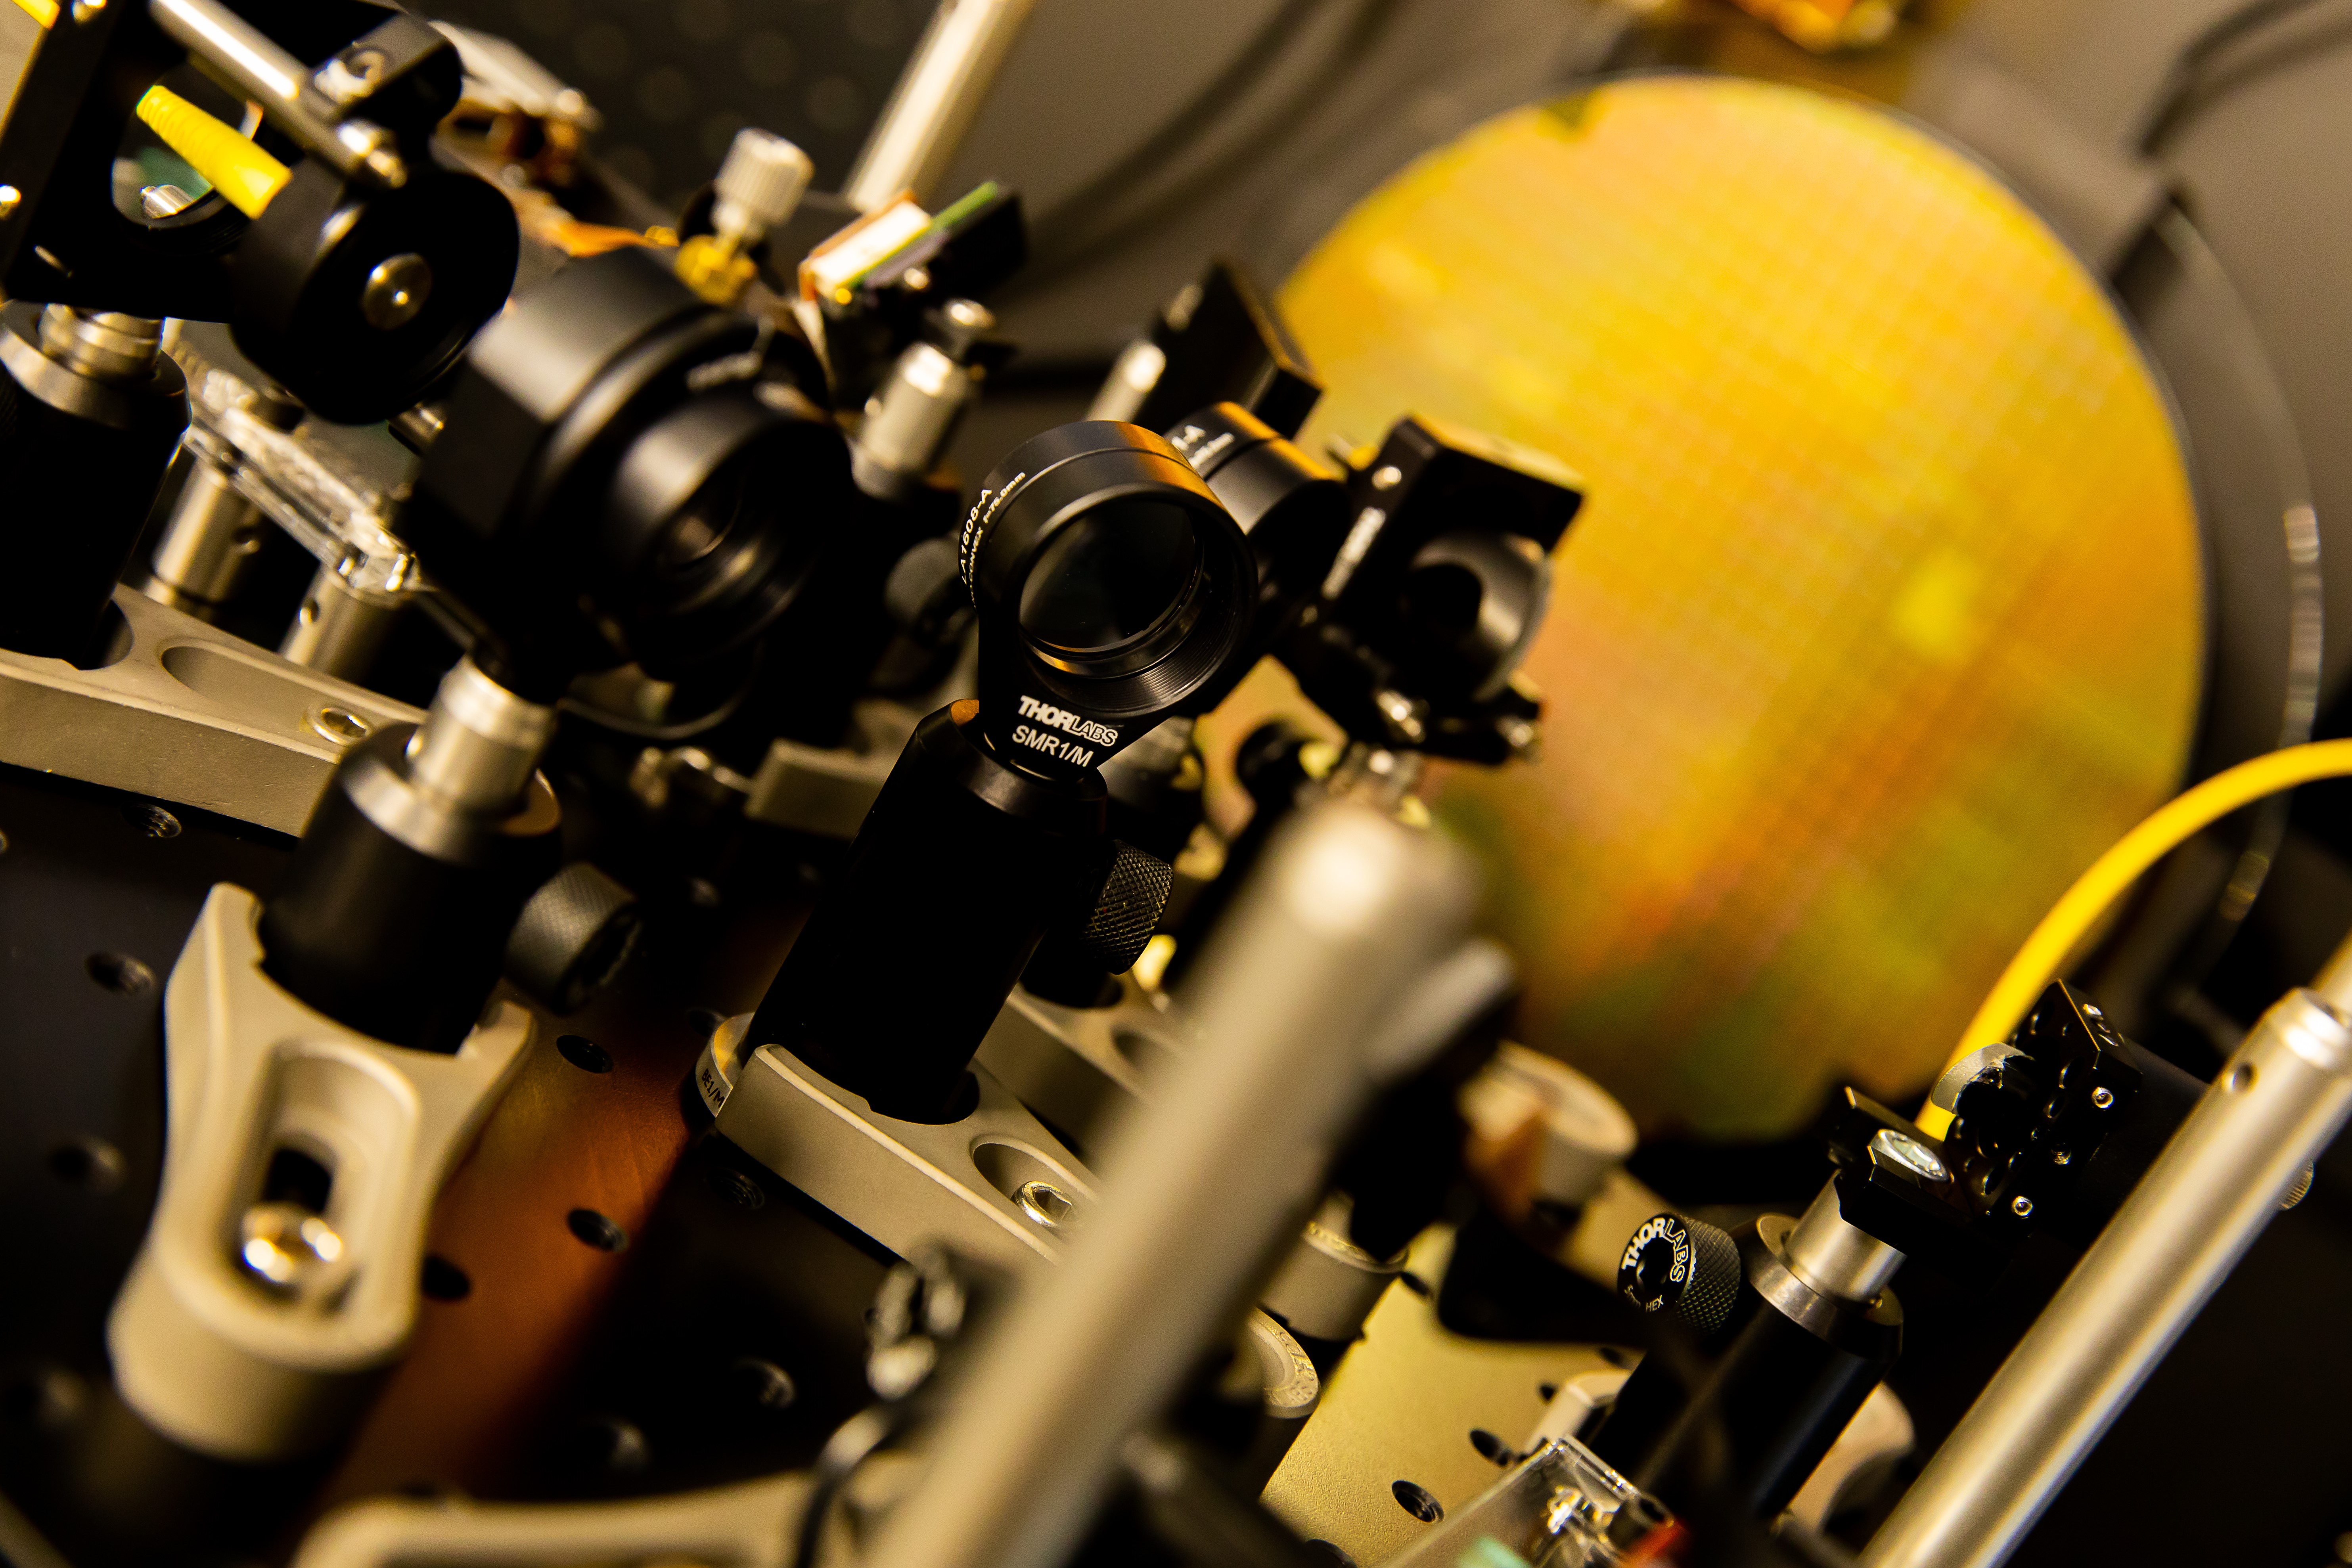 Die Zwickauer Wissenschaftler erforschen am Fraunhofer AZOM komplexe industrietaugliche optische Messverfahren und Systemkomponenten, charakterisieren Oberflächen, entwickeln anwenderspezifische Sensorik sowie Aktorik und bieten zerstörungsfreies Monitoring von Prozessen und Bauteilen.